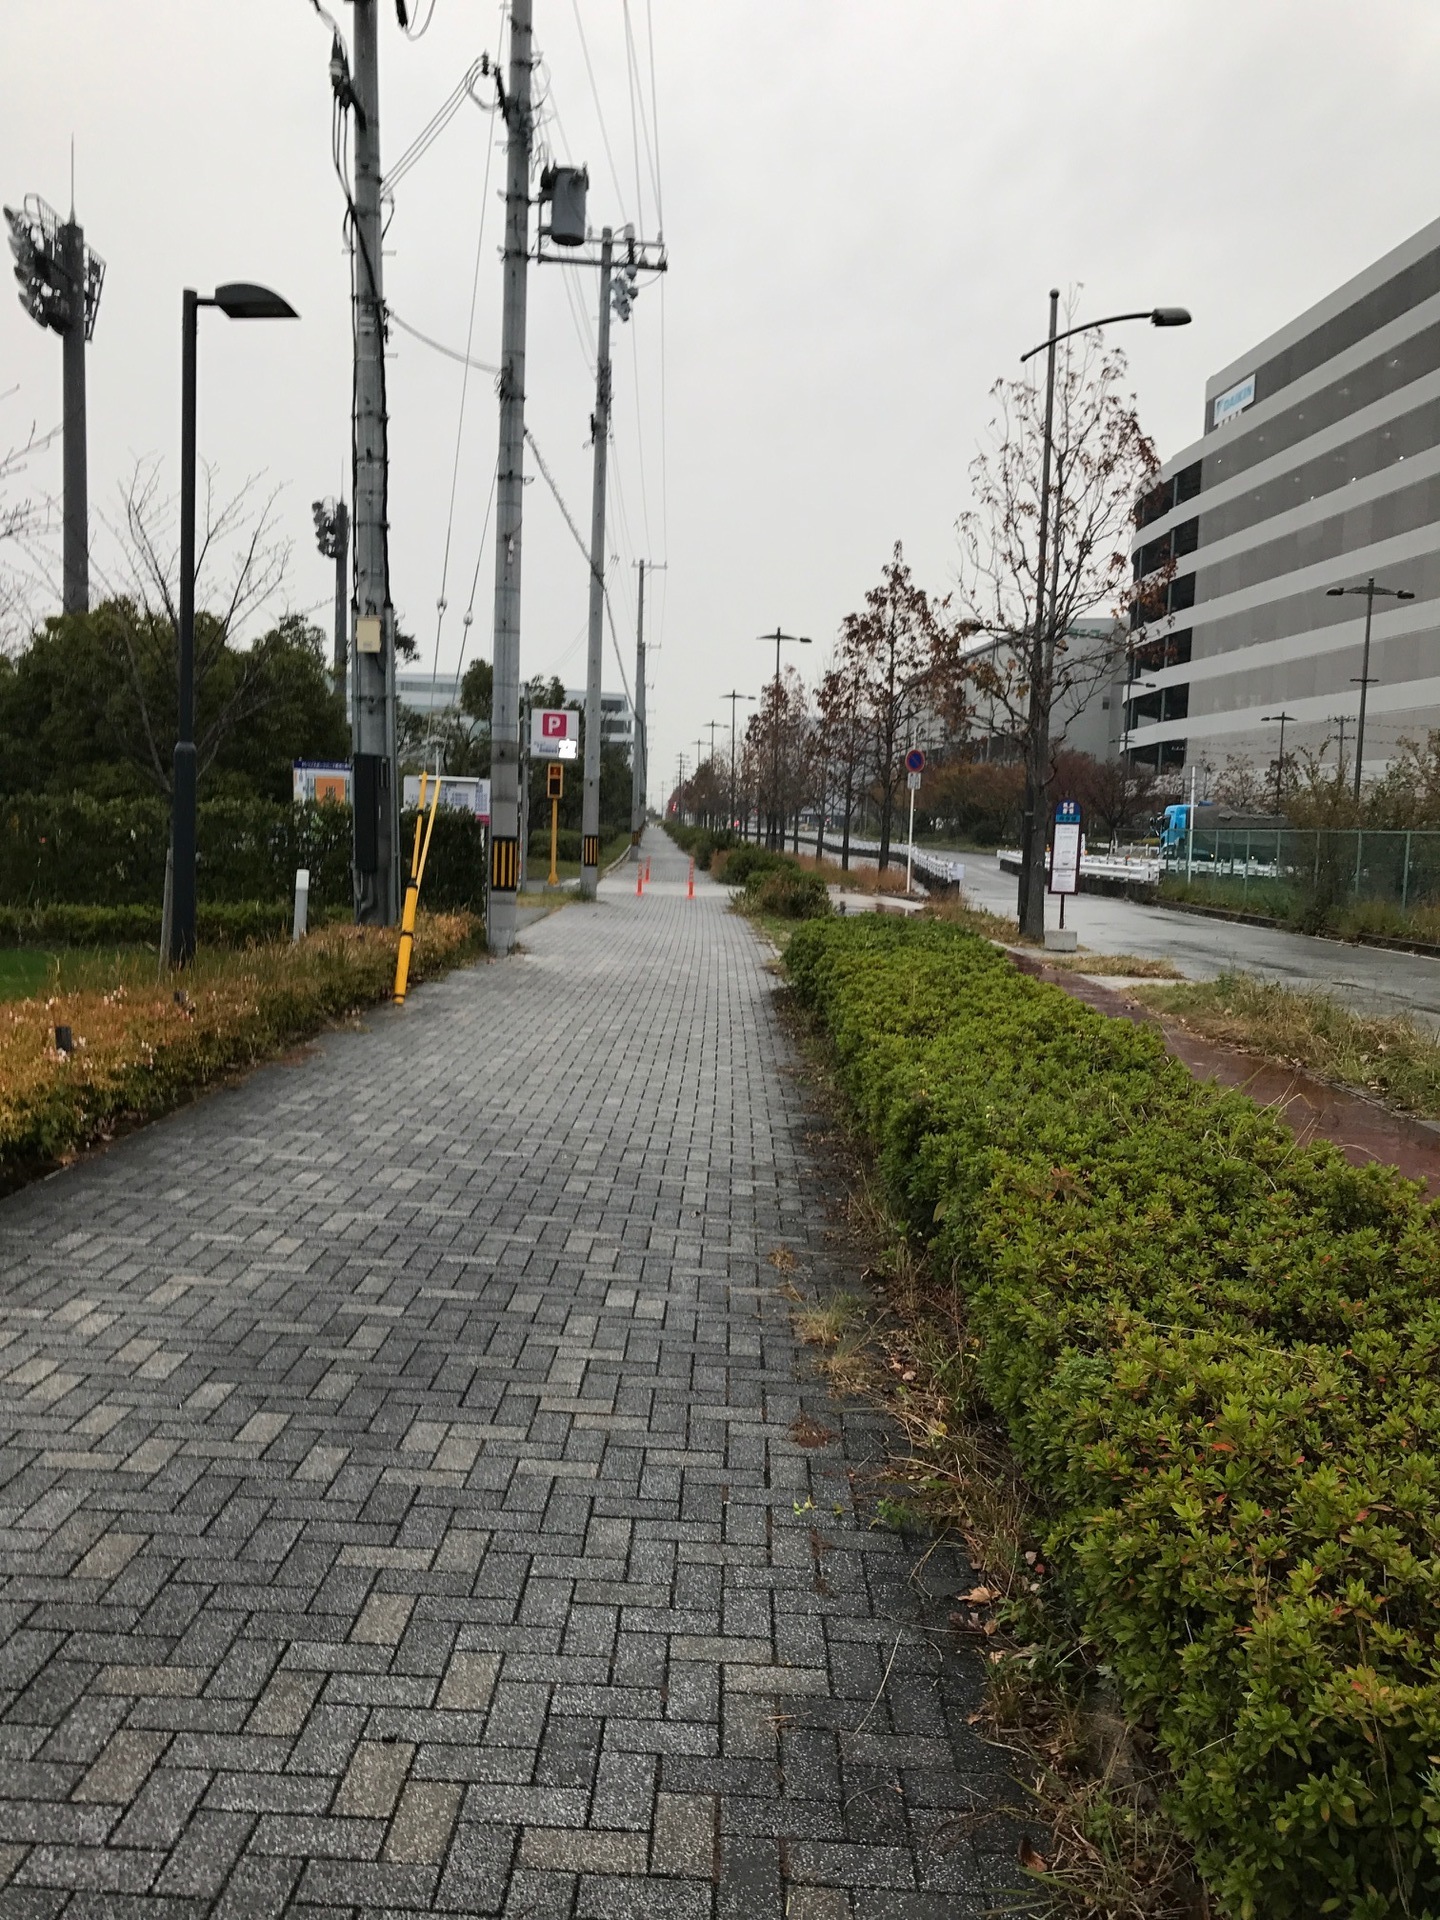 16 12 04 西九条駅からセレッソ大阪舞洲グラウンドまで歩いて行った場合の写真だけ 話題の8割がセレッソ大阪